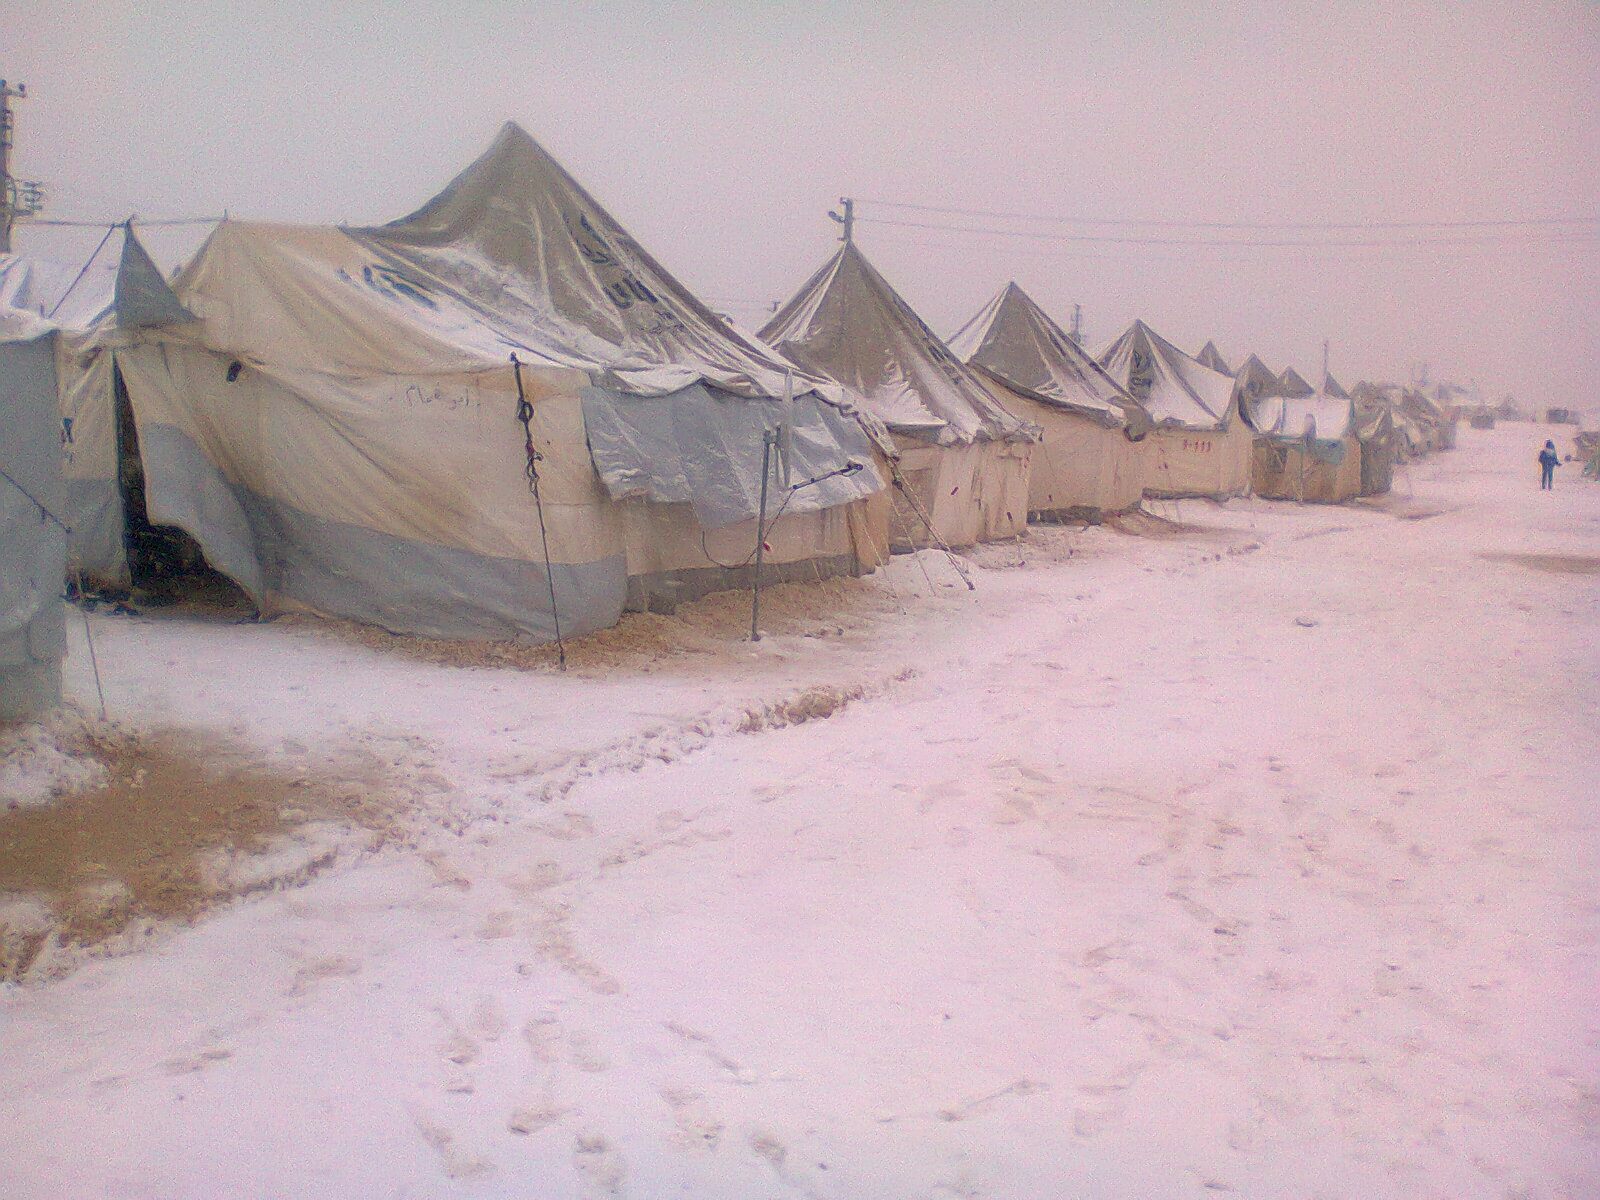 قال فريق منسقو الاستجابة في سوريا أن عدد المخيمات المتضررة نتيجة العاصفة الثلجية، خلال، بلغ 47 مخيما في مناطق شمال غرب سوريا.